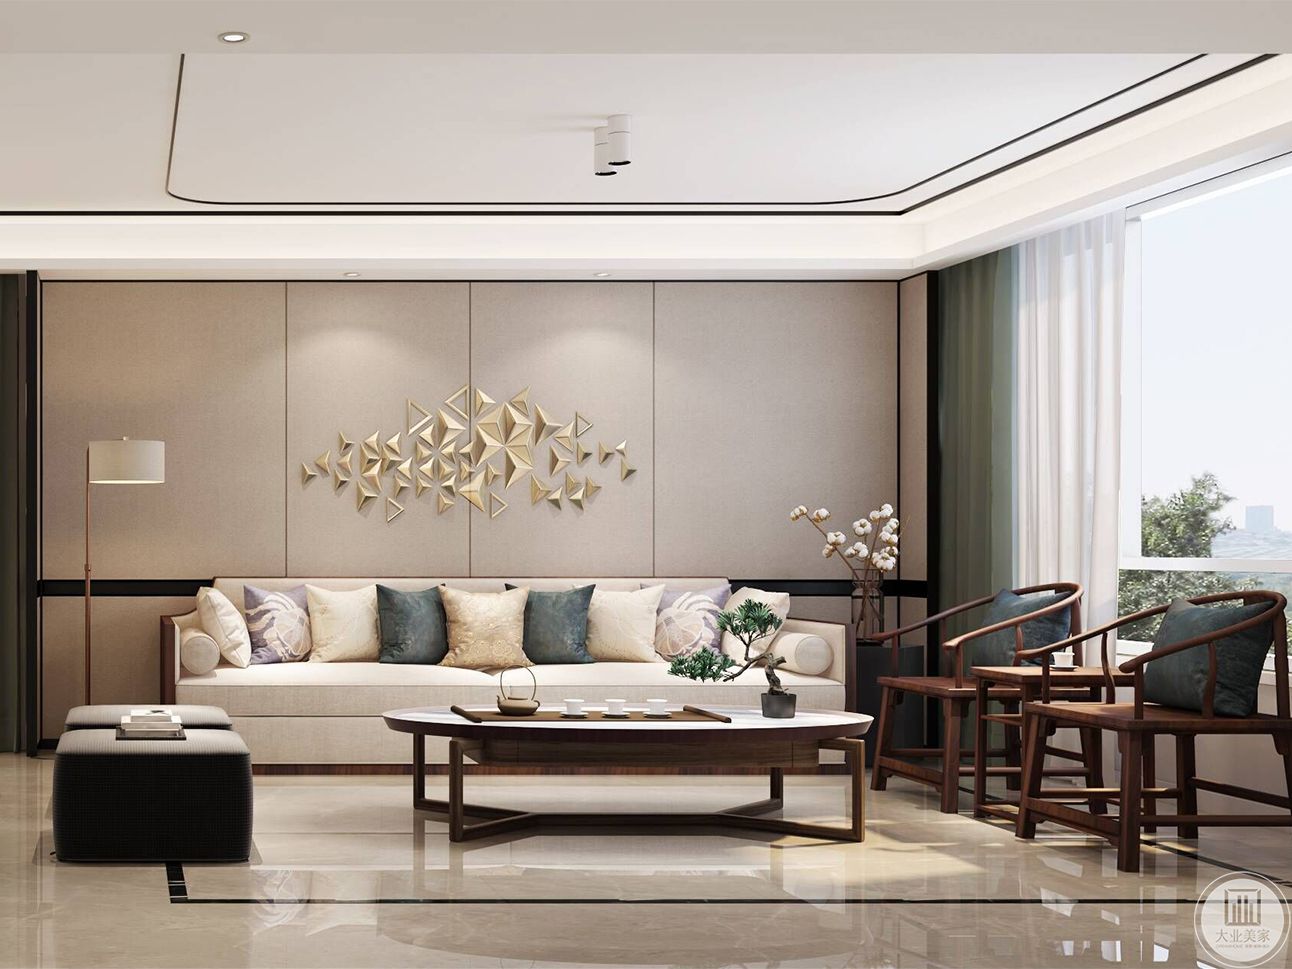 新中式风格-瑷颐湾-两室两厅-89平-装修实景效果图无锡装修效果图-无锡锦华装饰